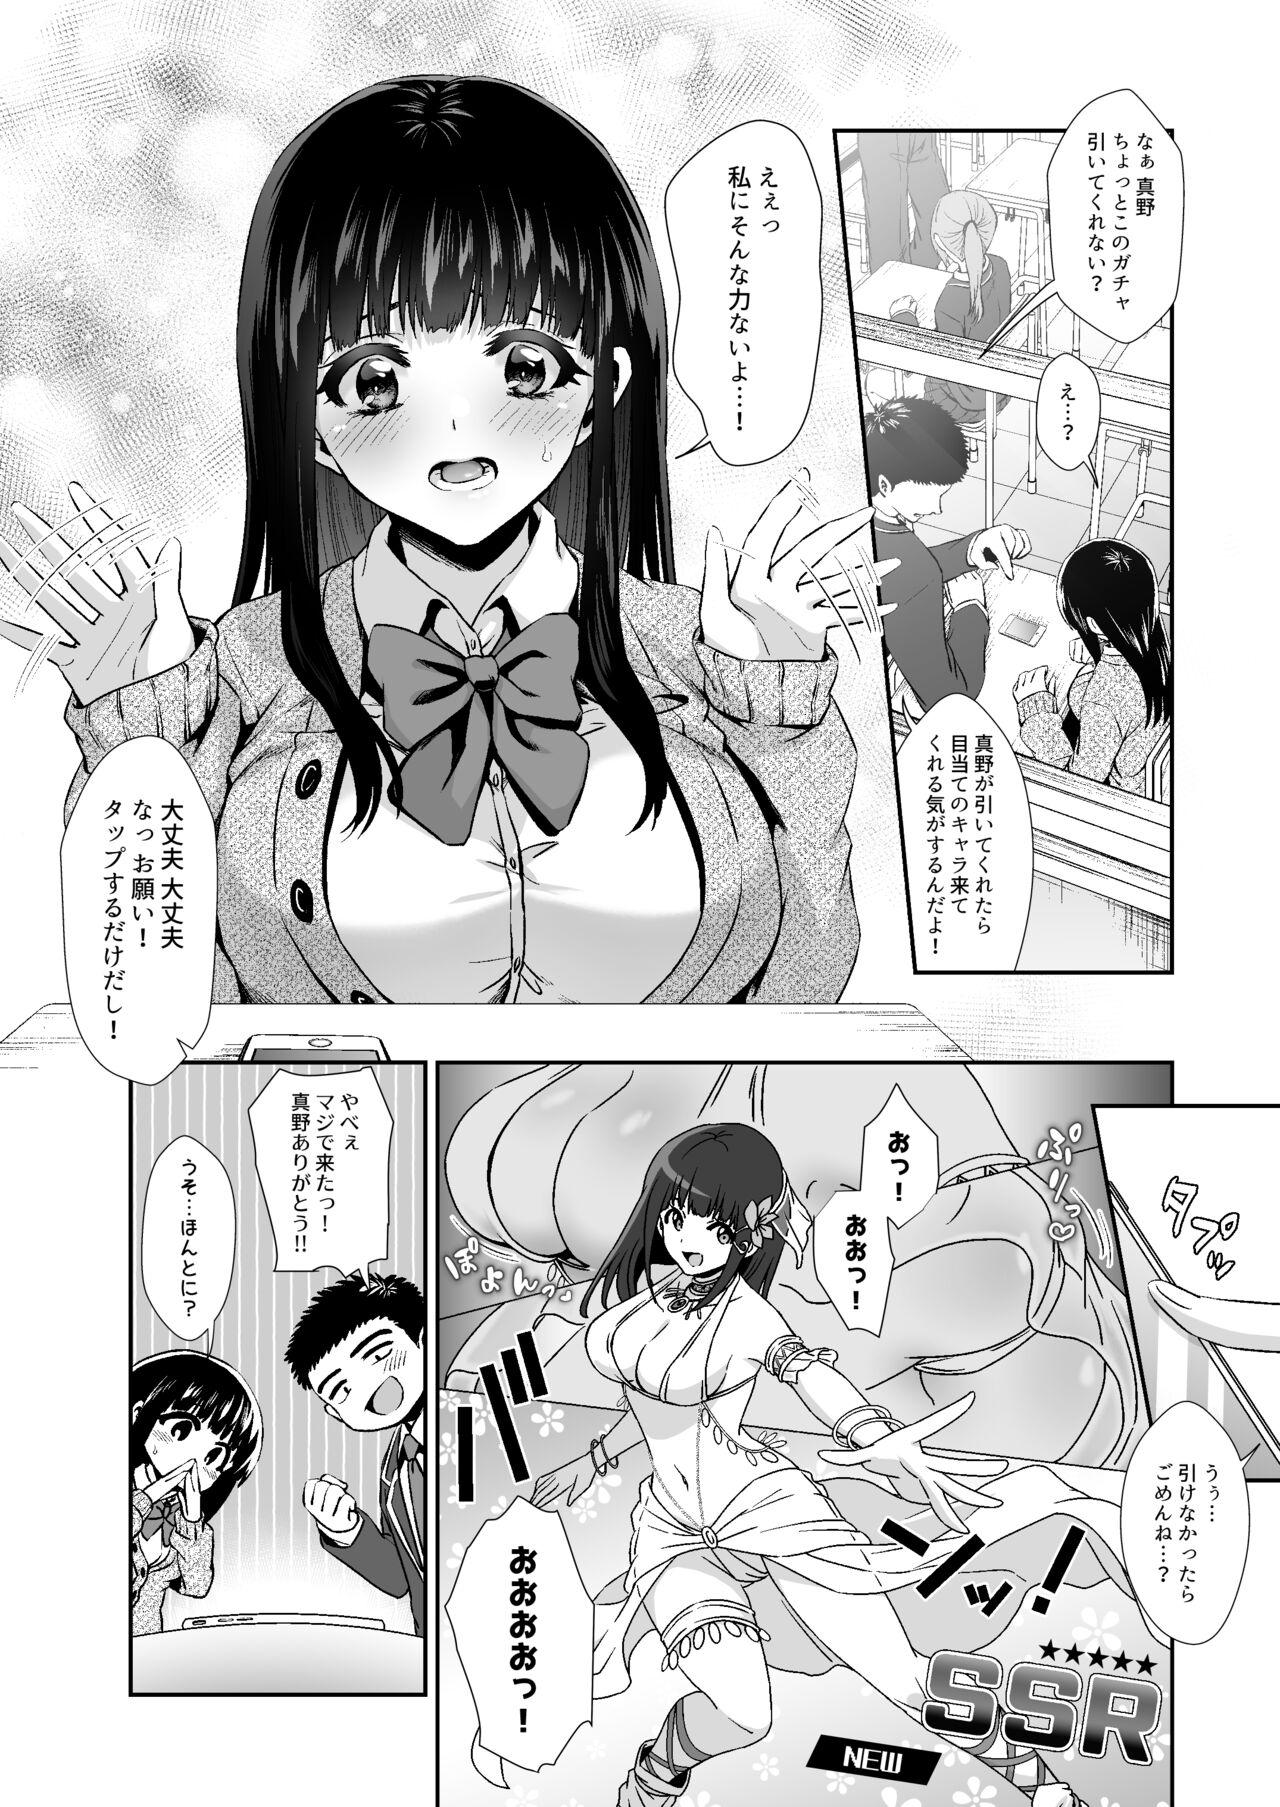 Deutsche [TORINOYA (Tori no Karaage)] Pure na Jimiko #0 Kimi to, Hajimete. -Pure na Jimiko no Himegoto- Episode 1 - Original Room - Page 6